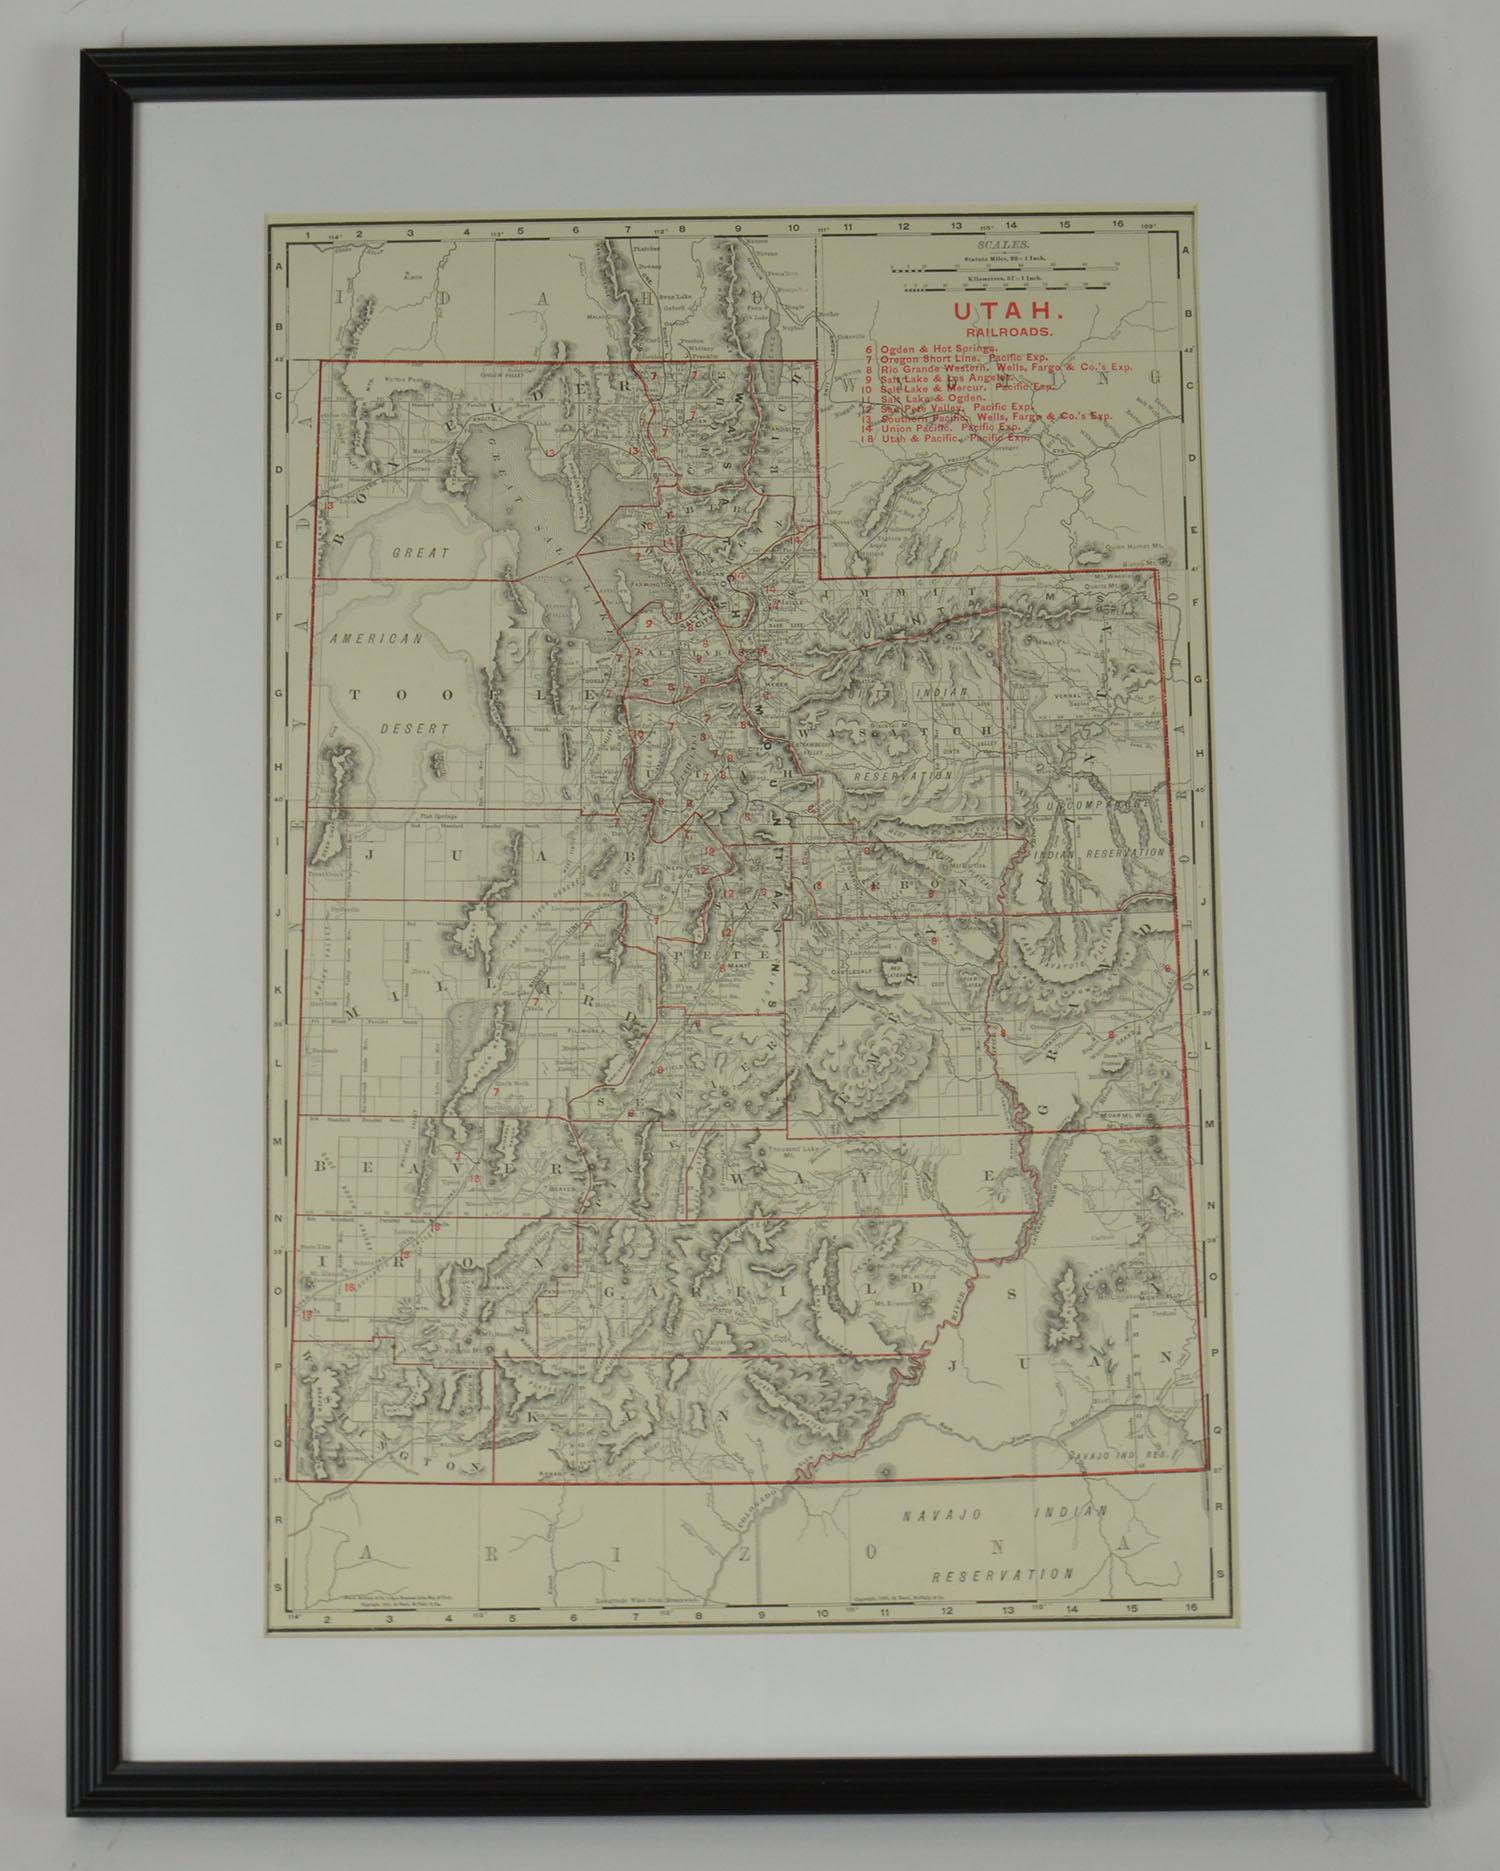 Set of 6 Original Vintage Maps of American States, circa 1900 (Edwardian)